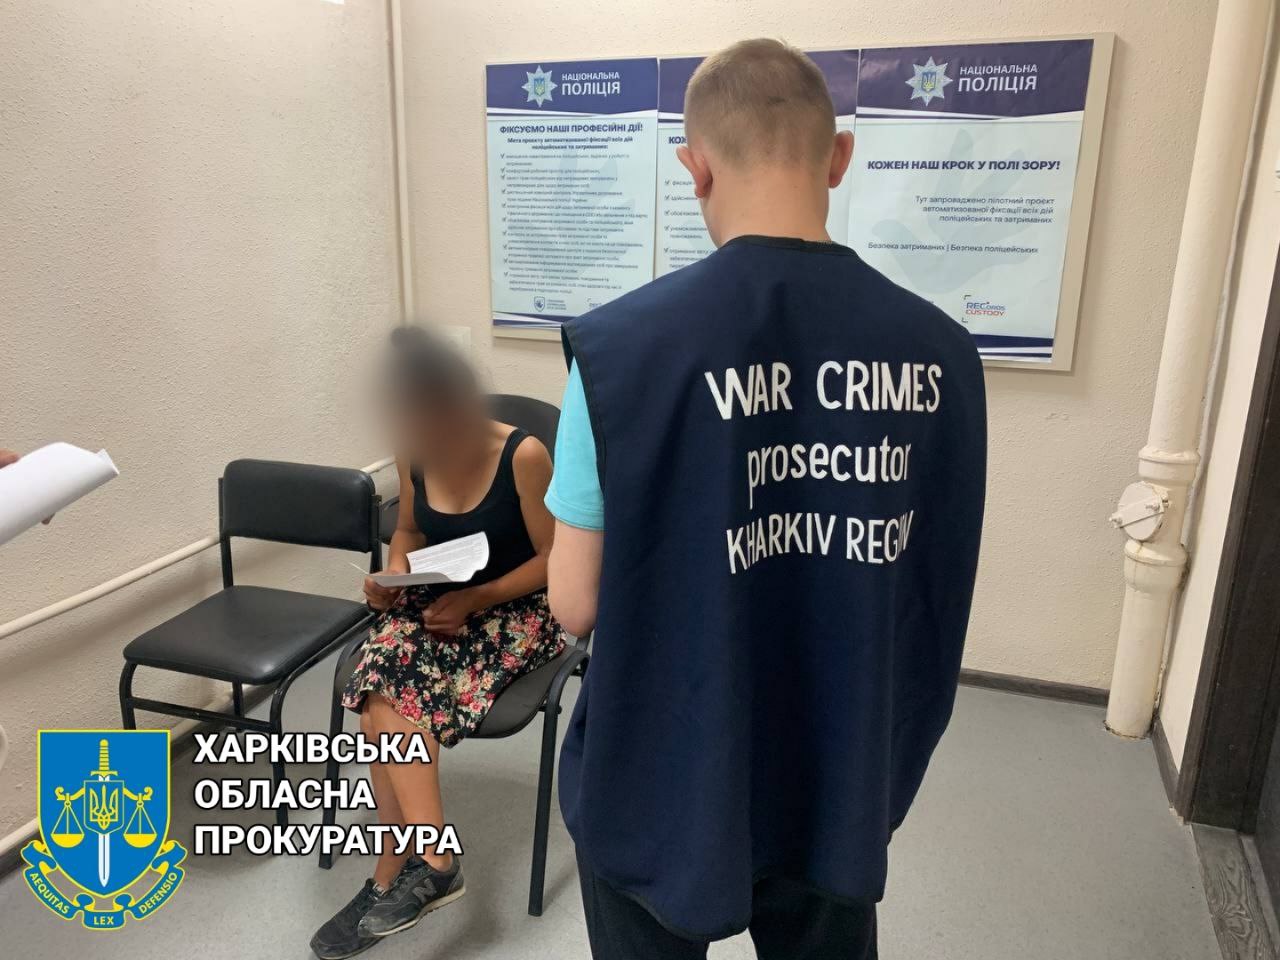 Новости Харьков: Ограбила мужчину налетчица на проспекте Гагарина